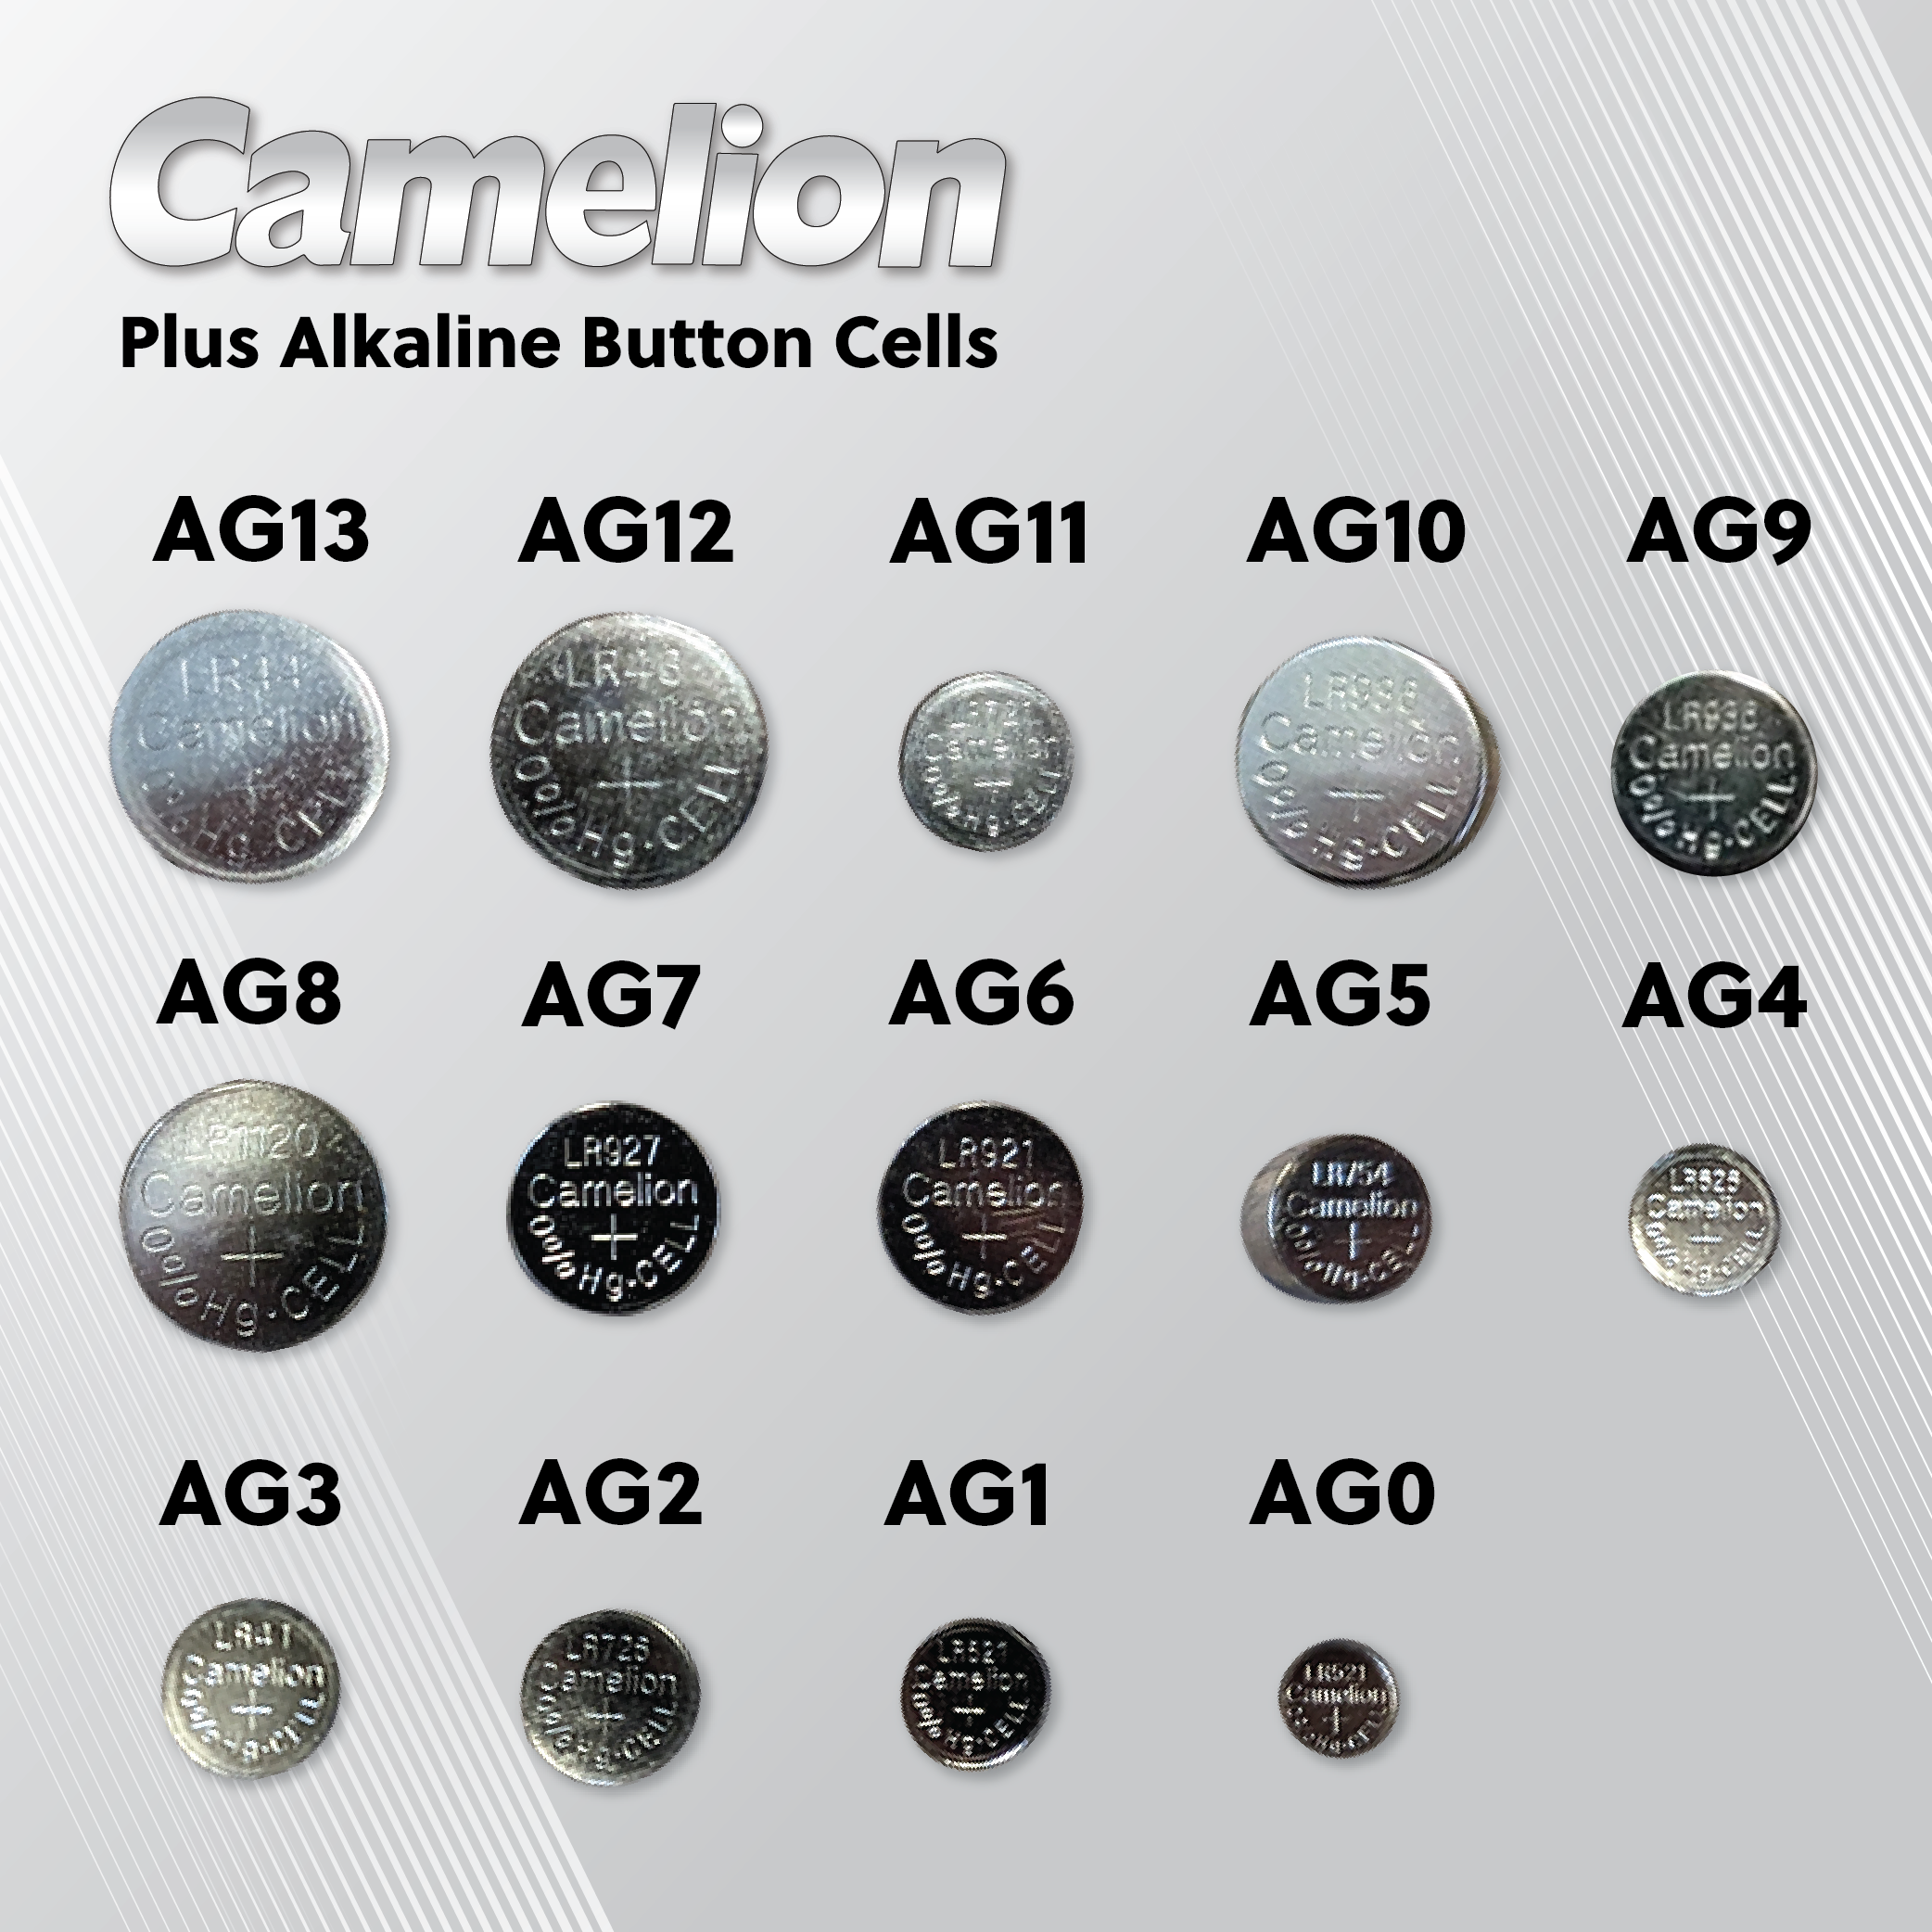 20 Camelion AG3 / LR41 / 192 / 392 pile bouton longue durée de vie